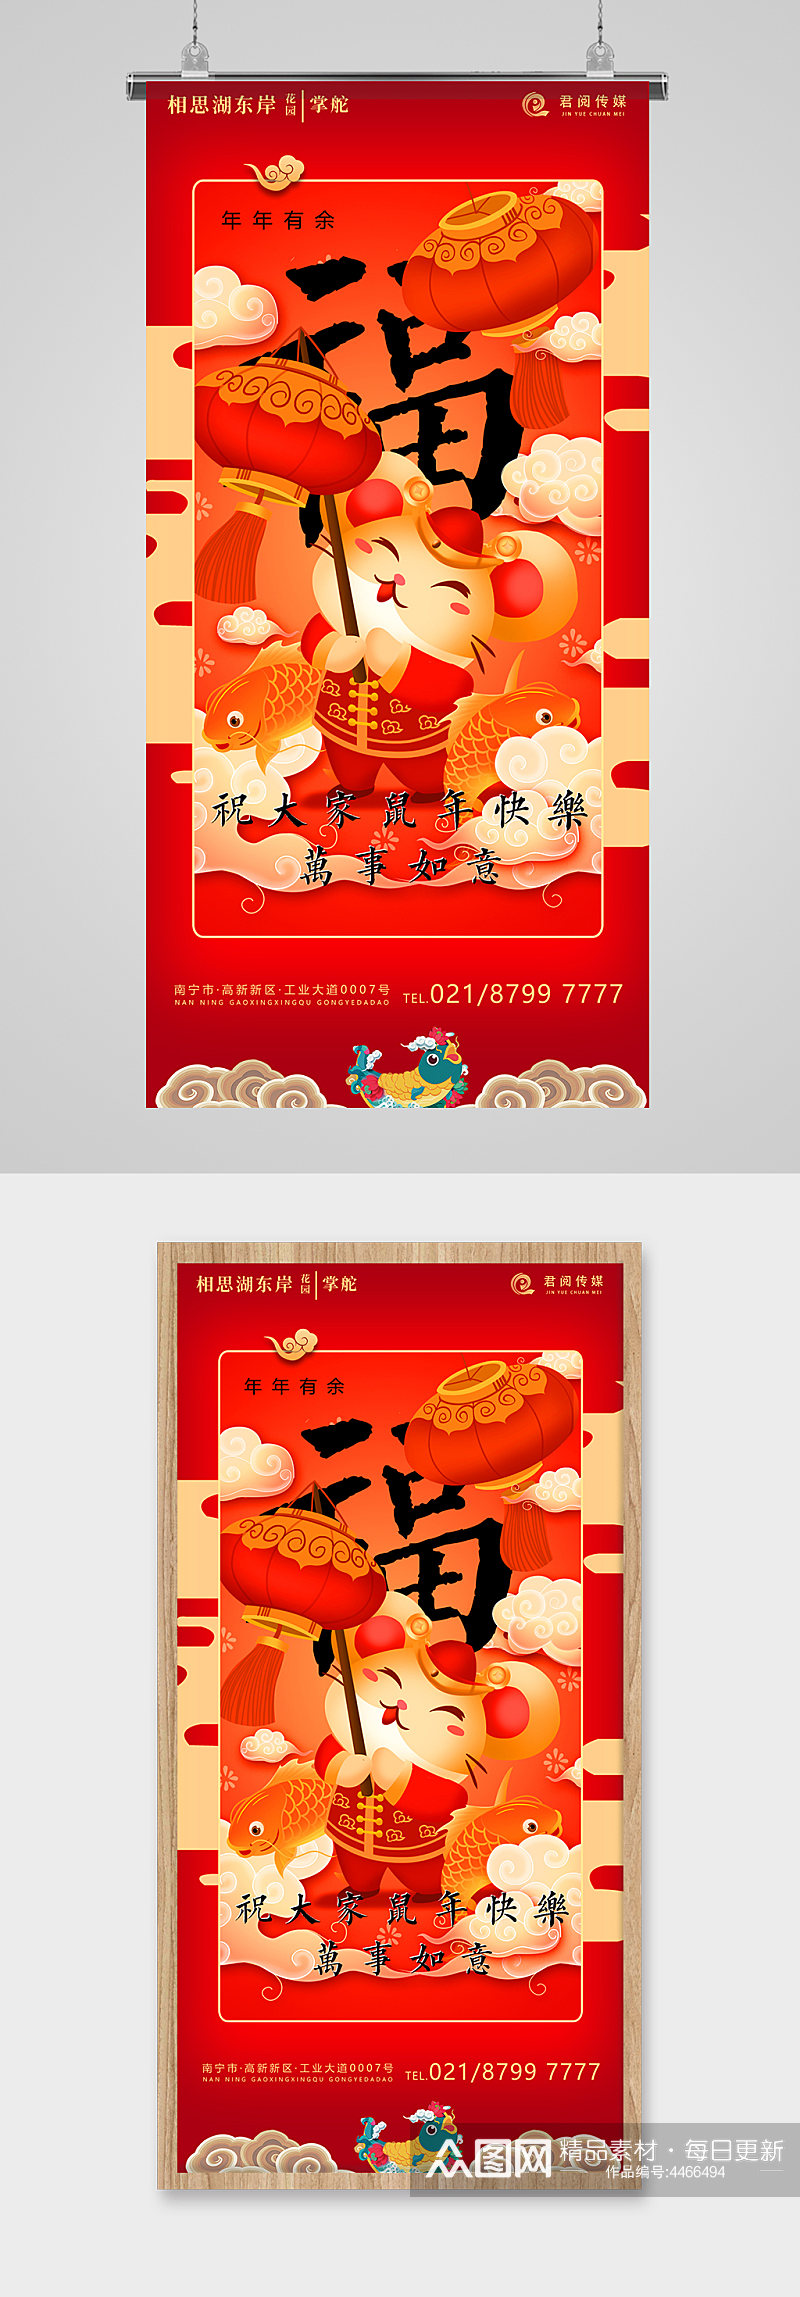 鼠年新年福字插画喜气海报素材